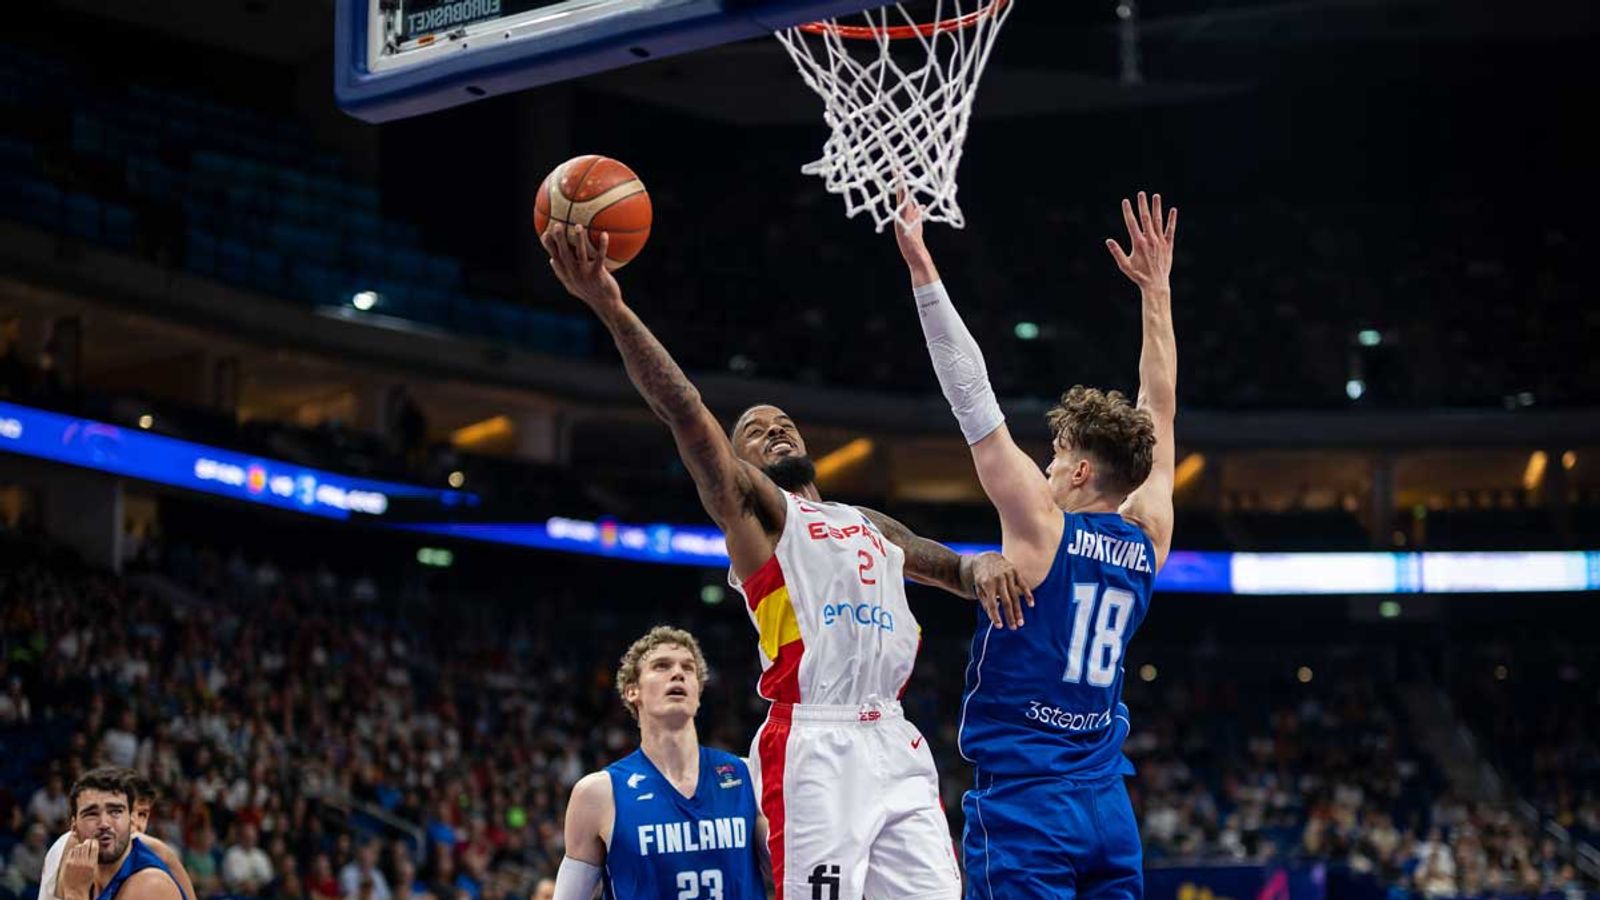 Campionato europeo di basket: la Spagna vince i quarti di finale contro la Finlandia |  notizie sul basket